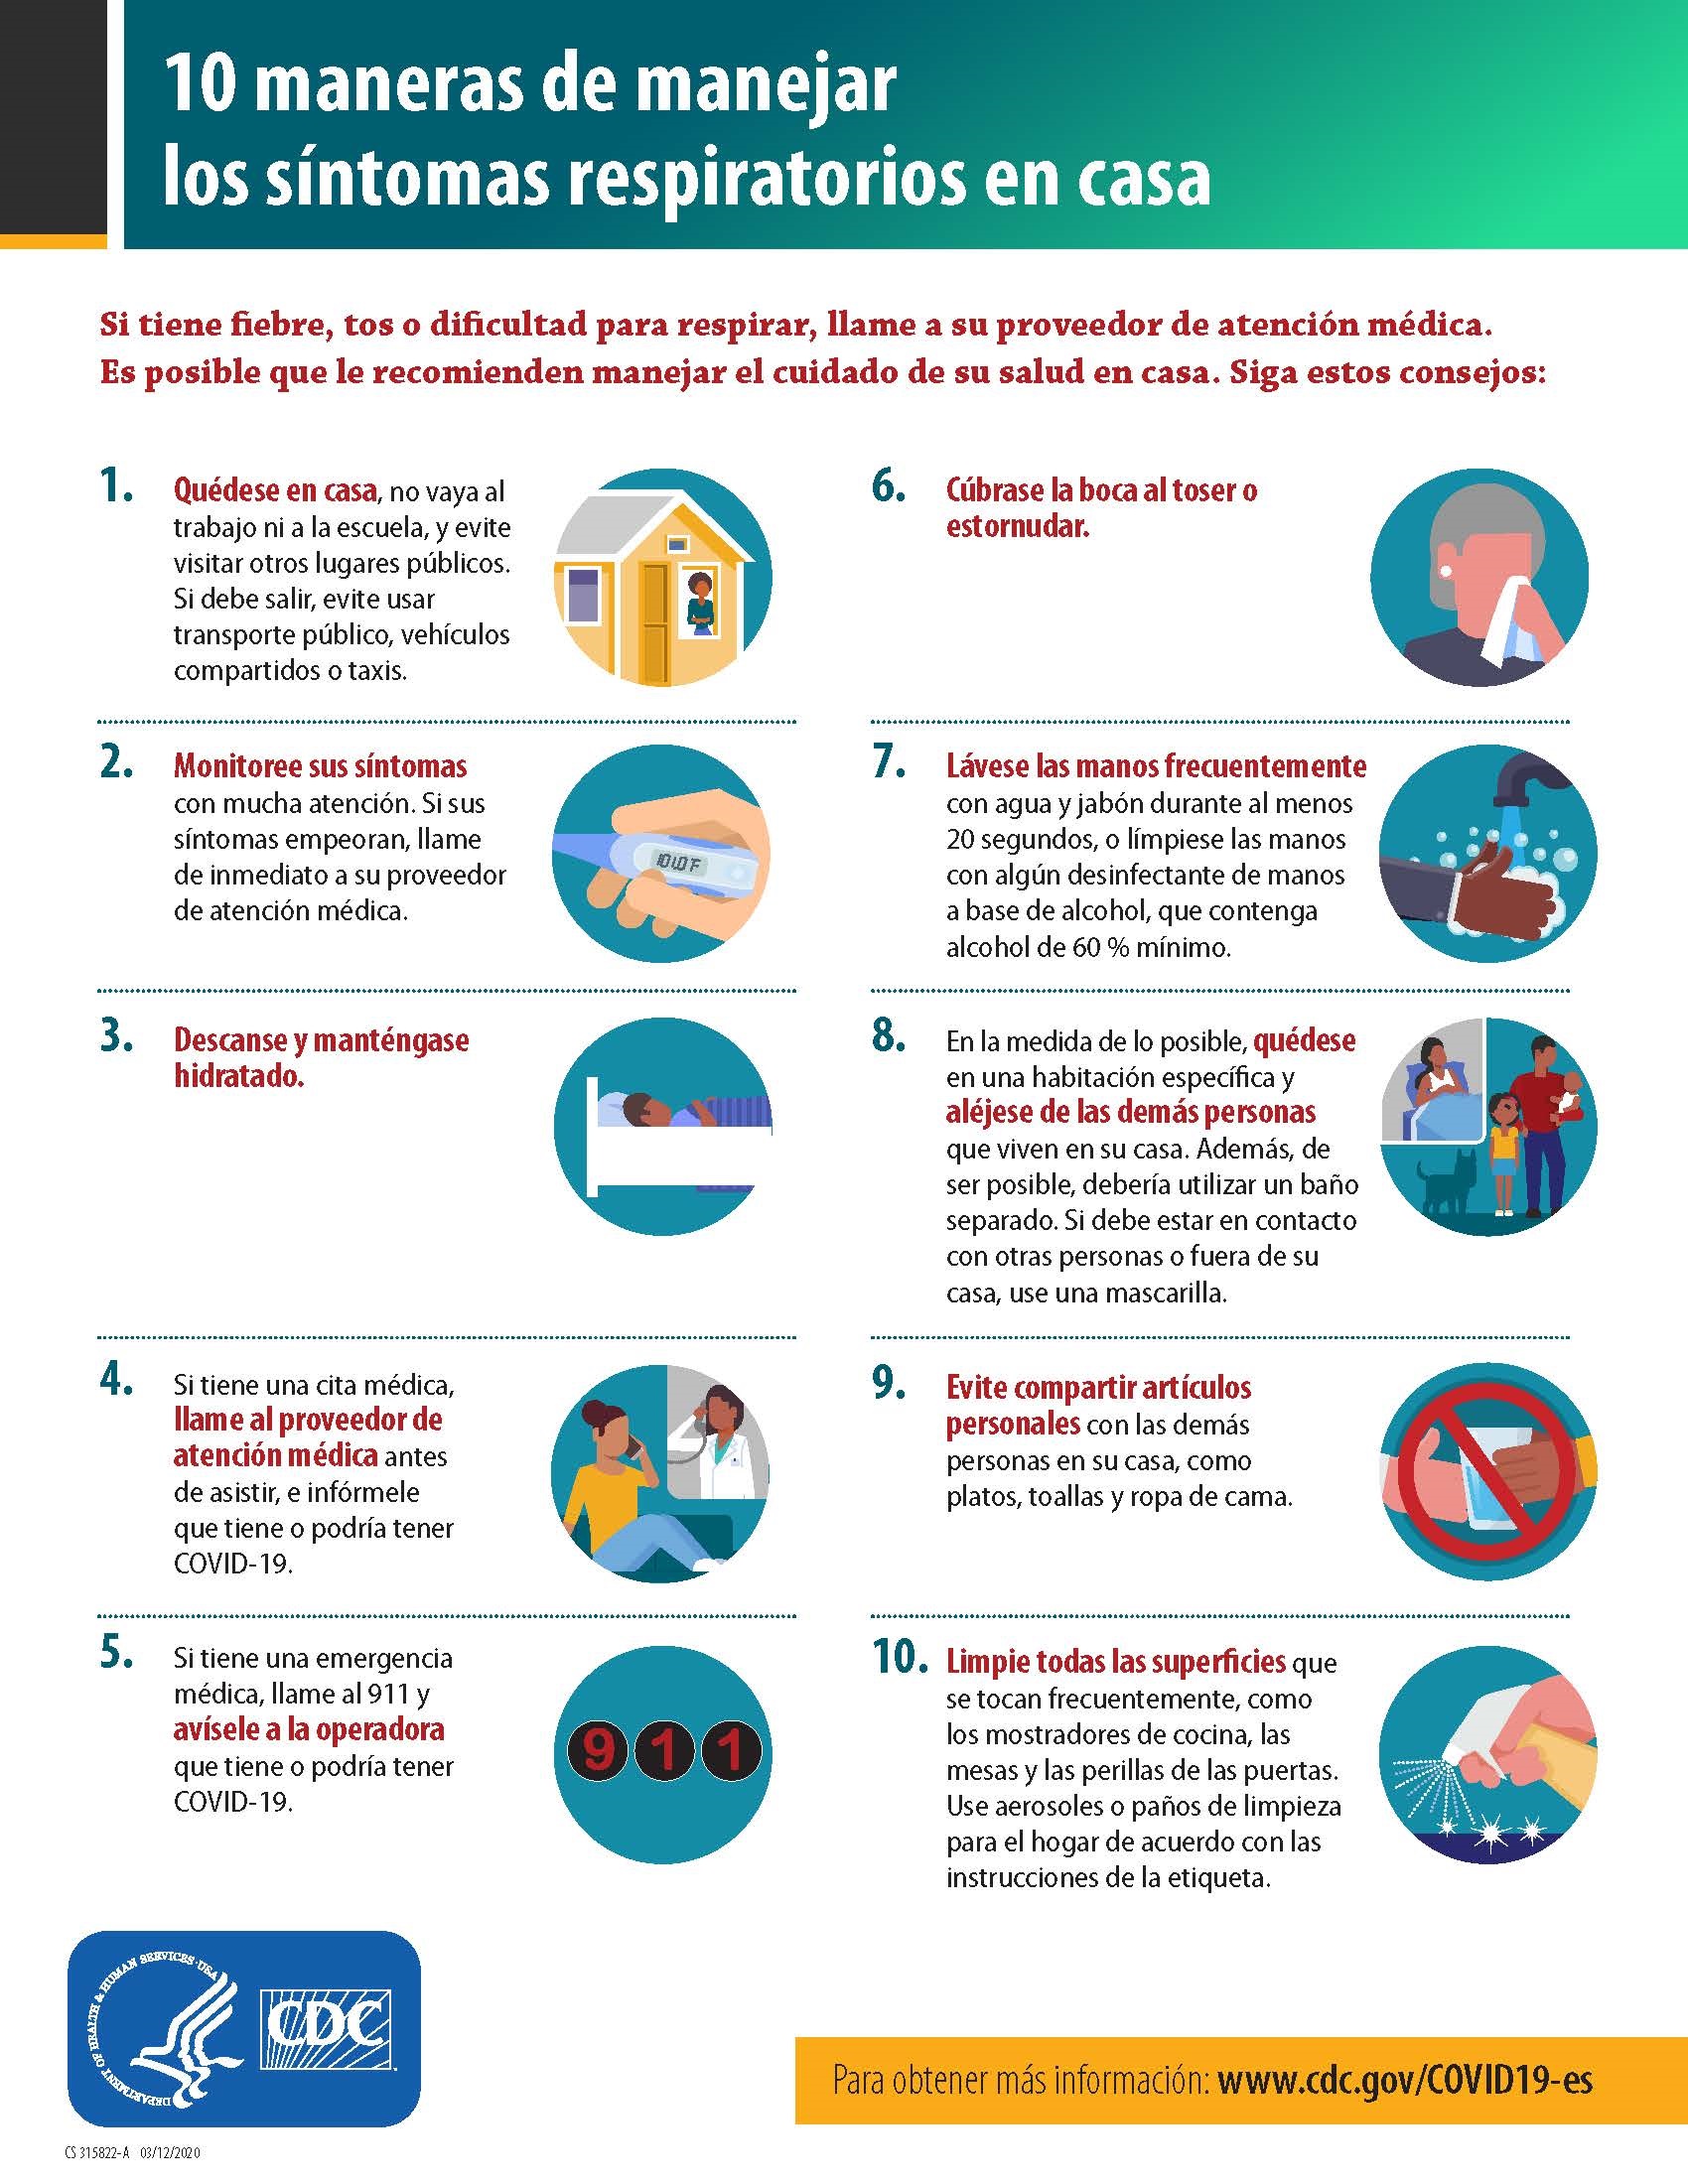 CDC: 10 maneras de manejar los síntomas respiratorios en casa